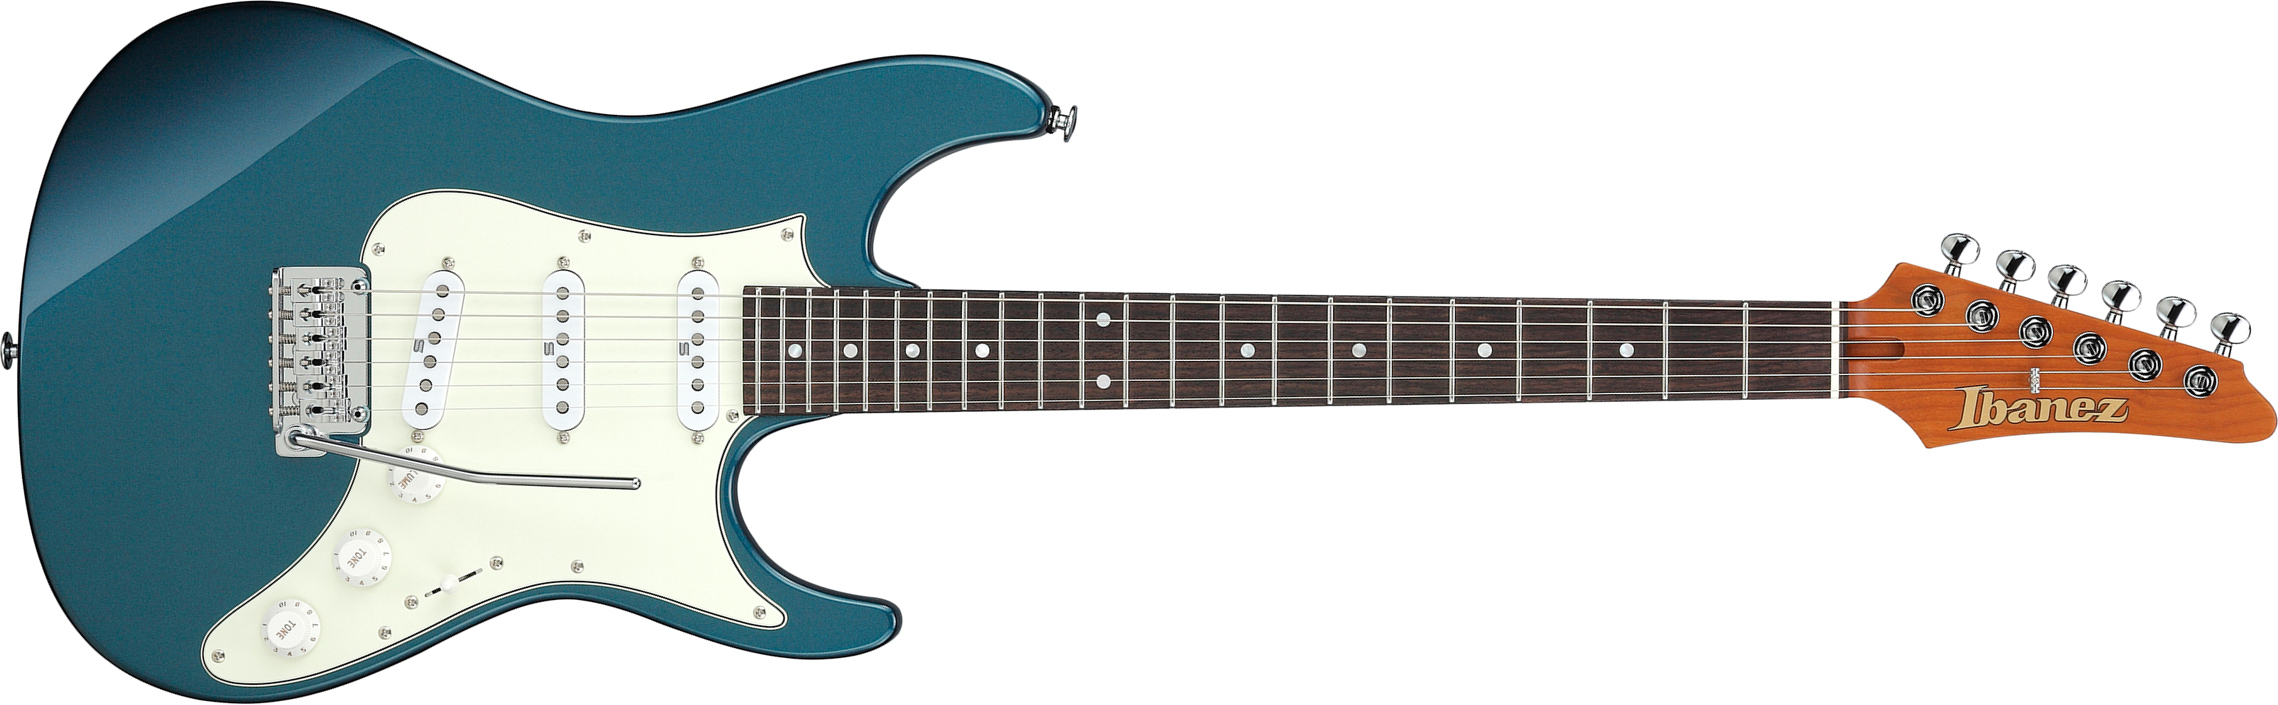 Ibanez Az2203n Atq Prestige Jap 3s Seymour Duncan Trem Rw - Antique Turquoise - Str shape electric guitar - Main picture